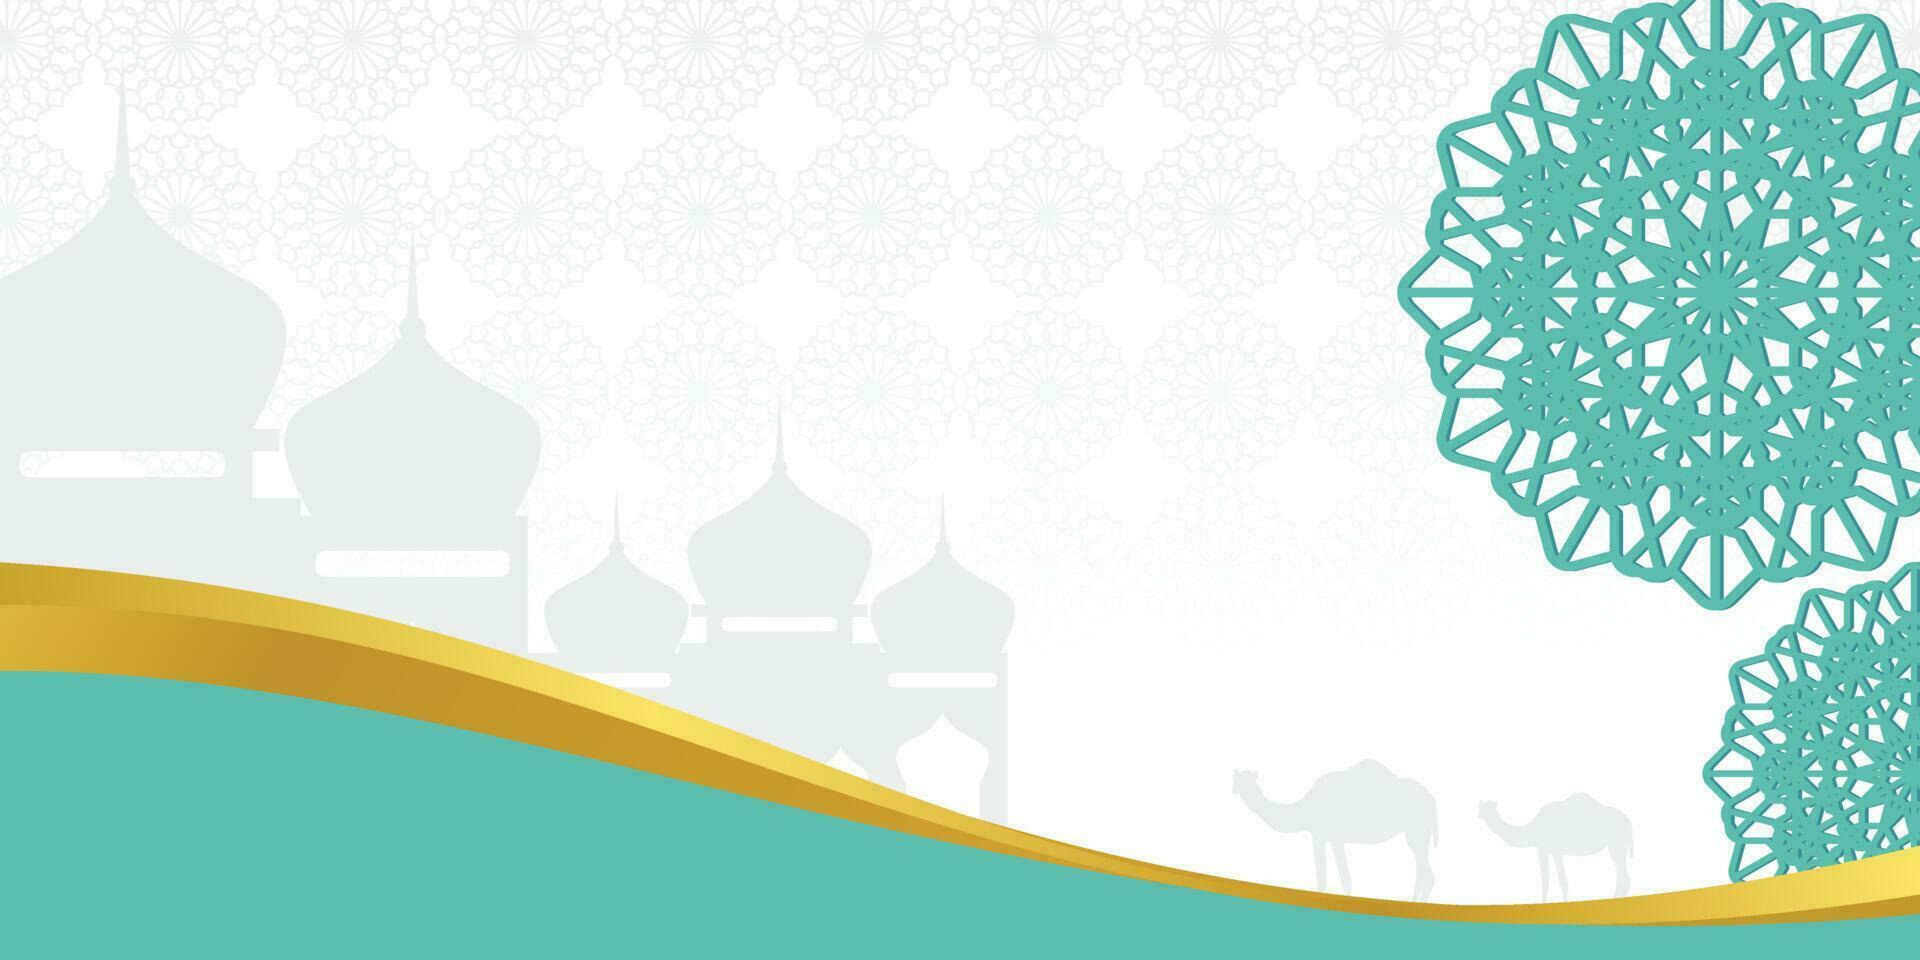 islamique arrière-plan, avec mosquée, mandala et chameau Icônes. bannière modèle avec vide espace pour texte. islamique saint journée vecteur illustration